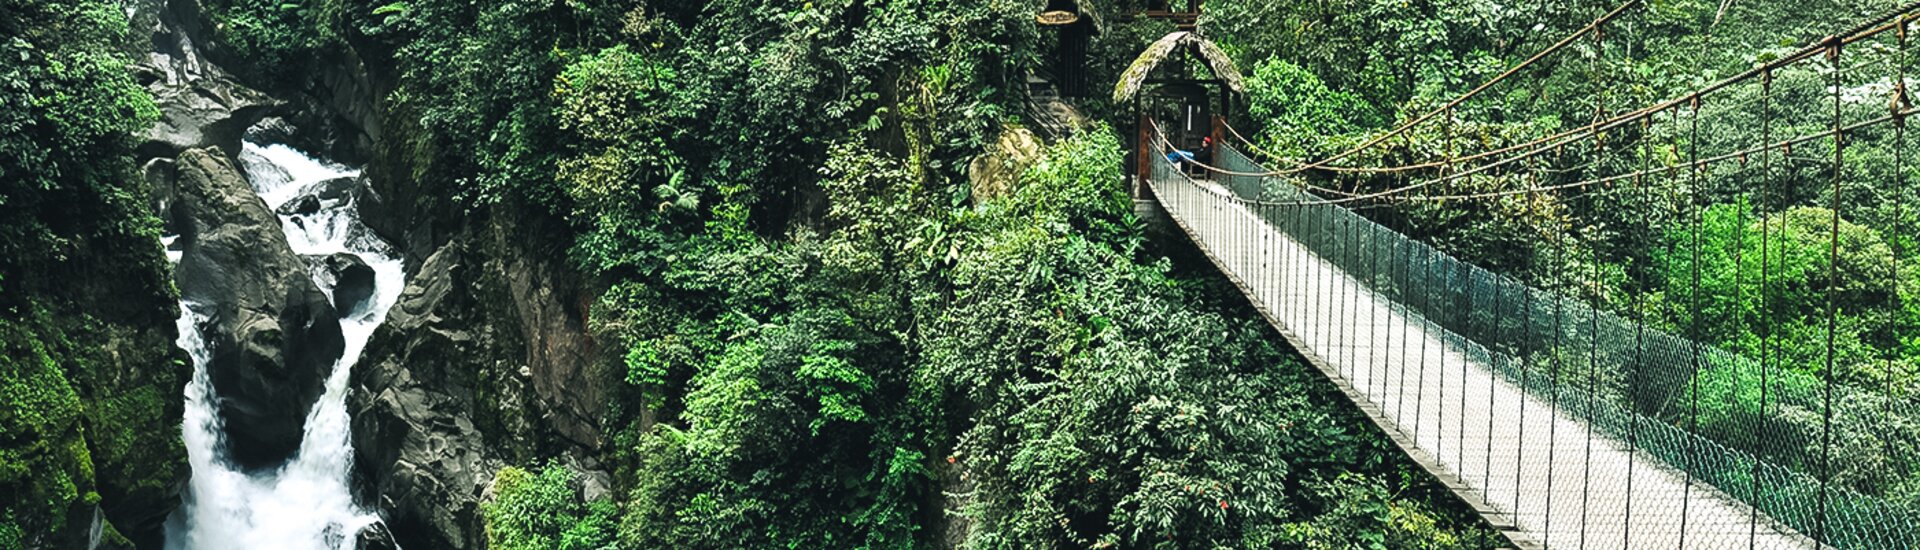 Die Hängebrücke des Pailon del Diablo Wasserfalles, Ecuador